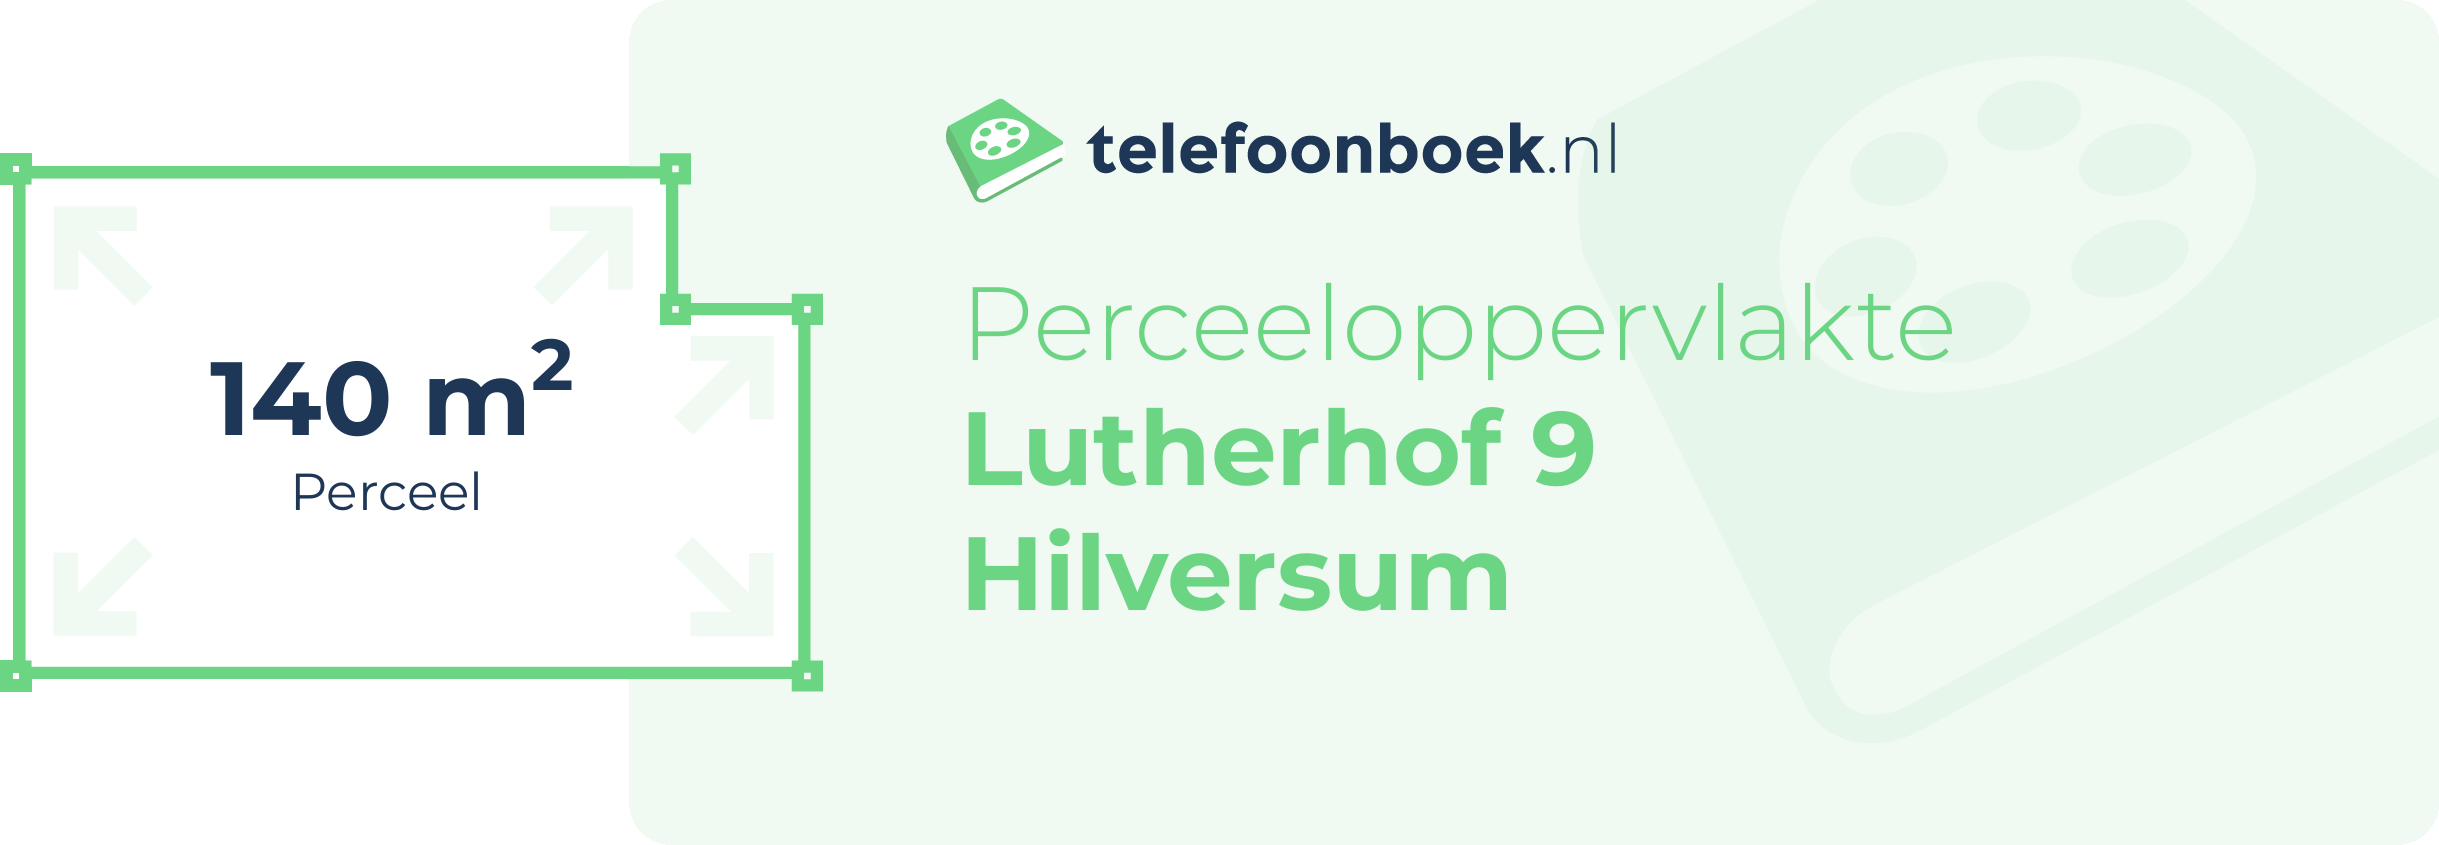 Perceeloppervlakte Lutherhof 9 Hilversum